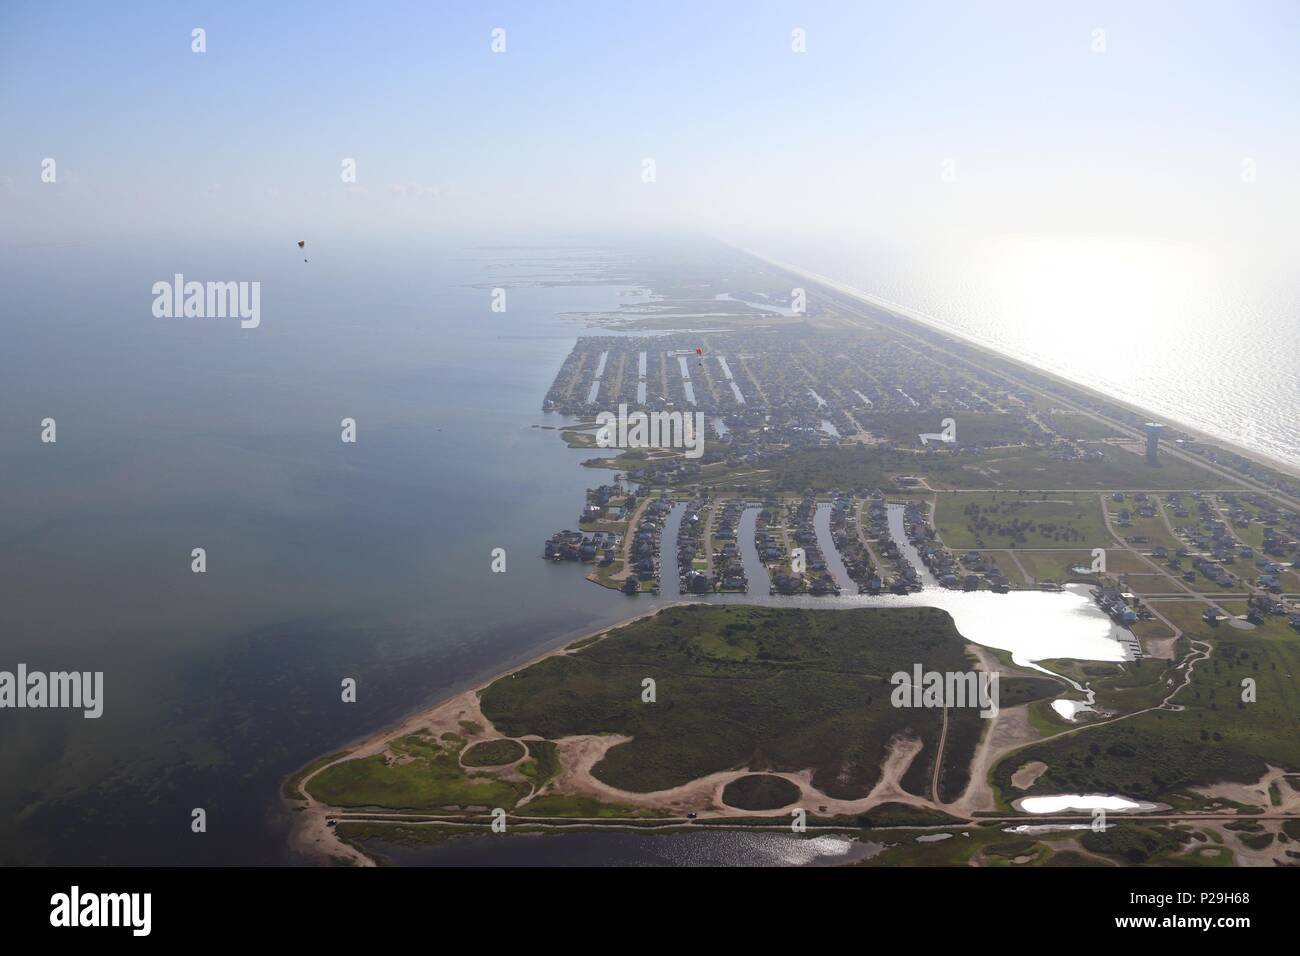 Vue aérienne de la côte du golfe du Texas, Galveston Island, USA. Haze en raison de conditions climatiques chaudes. Deux pilotes de paramoteur, l'immobilier et les paysages. Banque D'Images